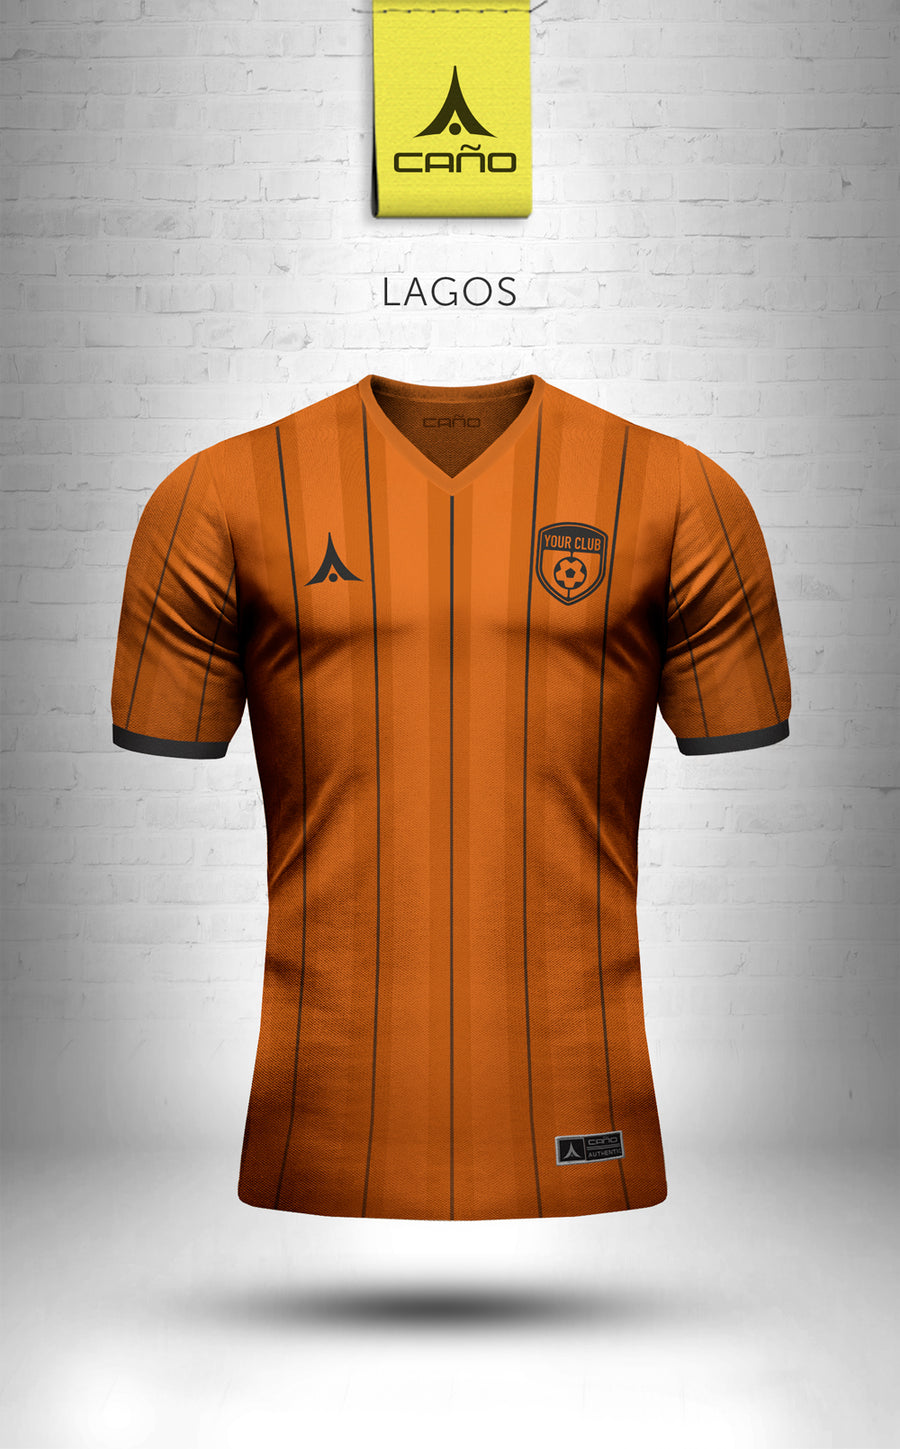 Lagos in orange/black